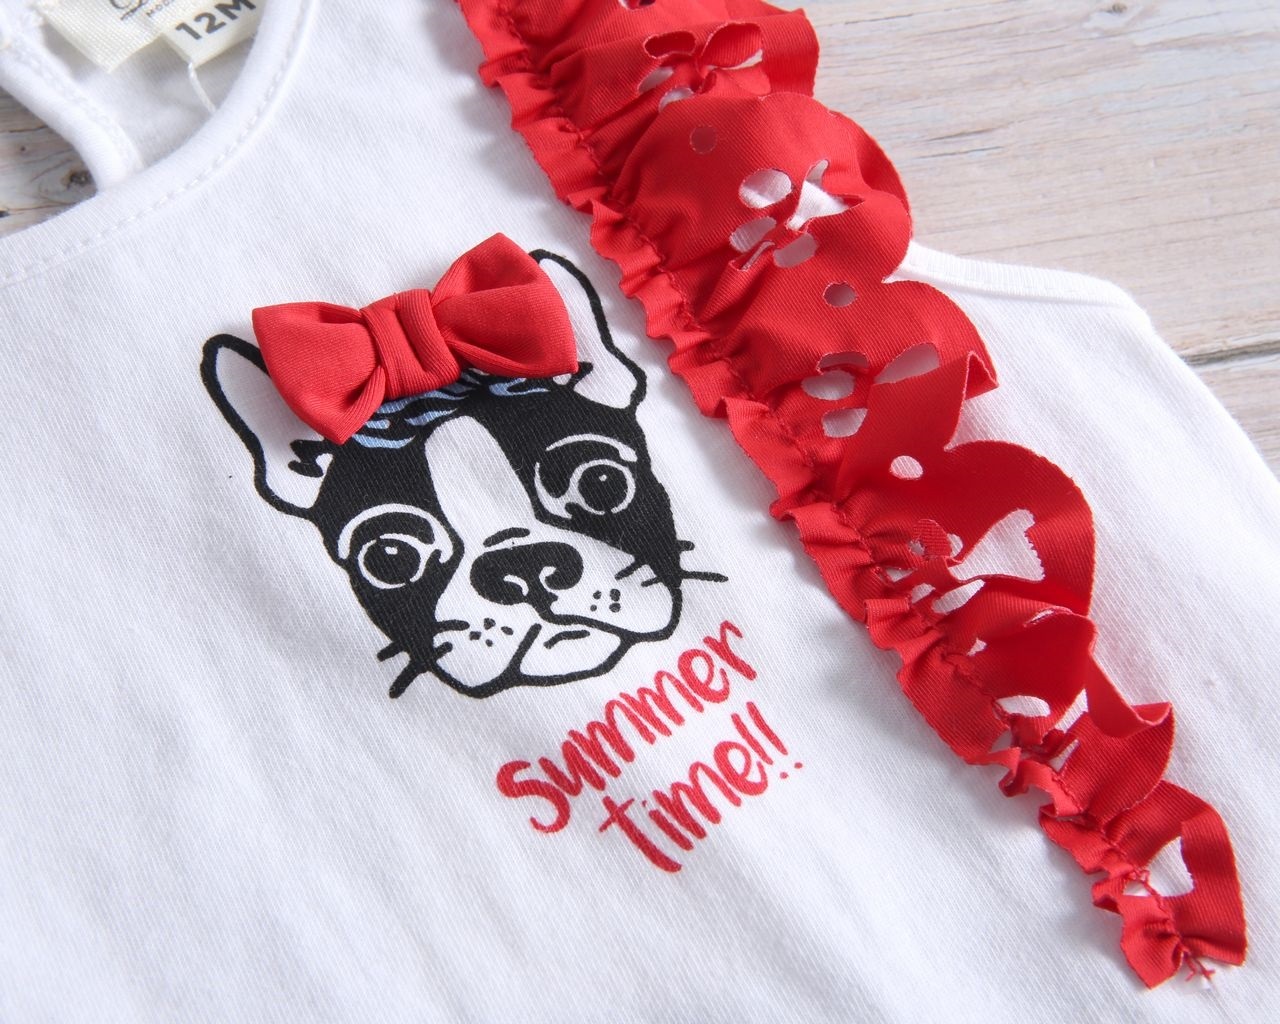 Imagen de Camiseta blanca de bebé niña con volantes rojos en hombros y estampado perrito